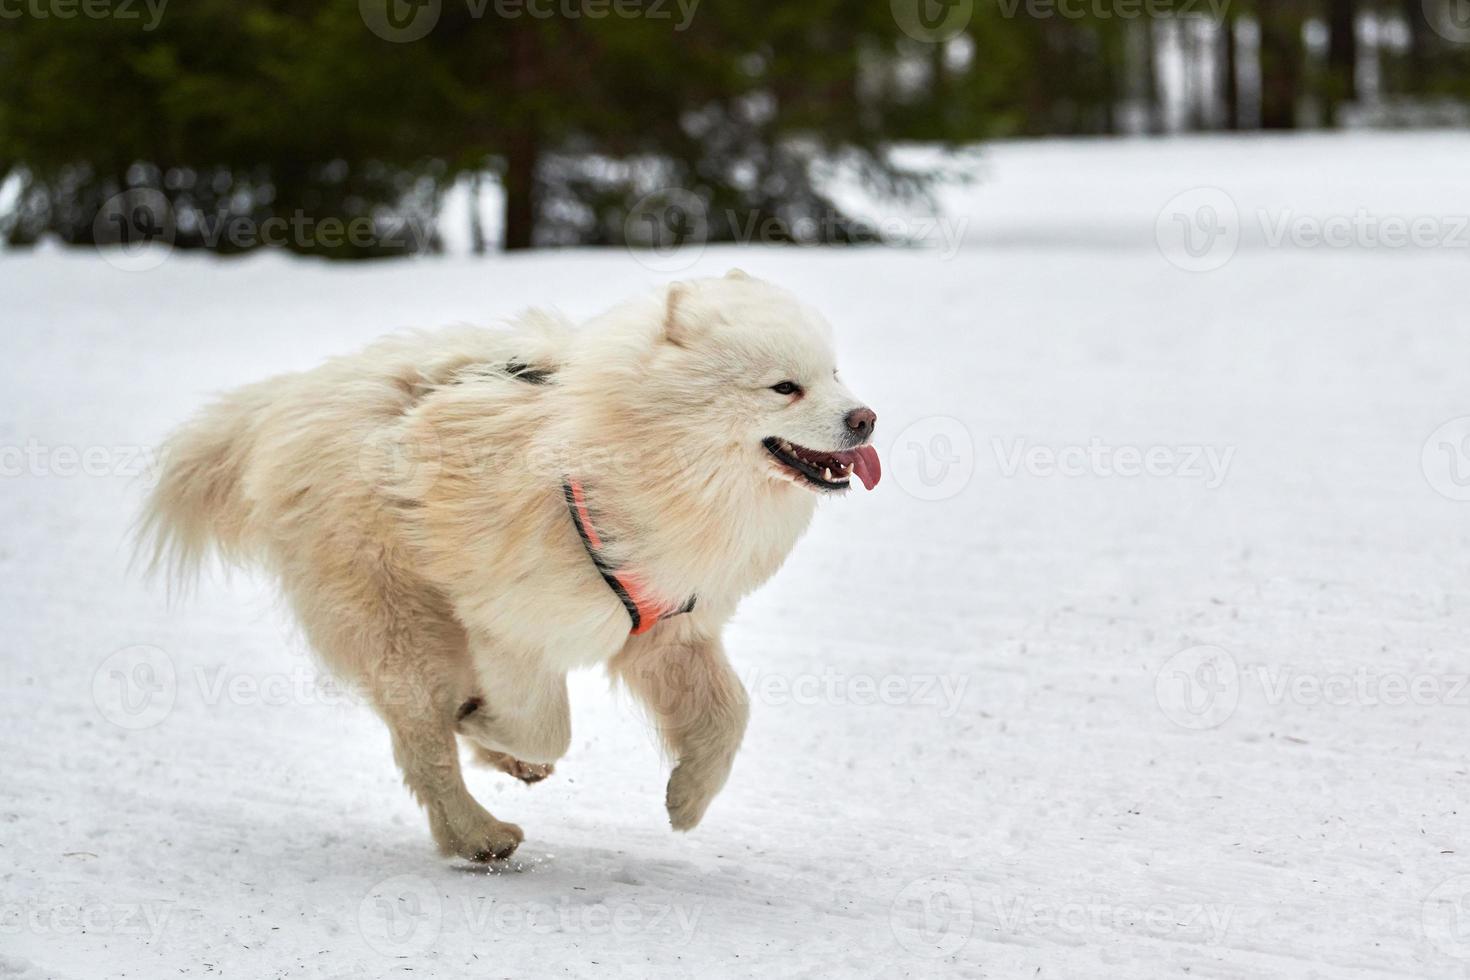 course de chiens samoyèdes sur des courses de chiens de traîneau photo